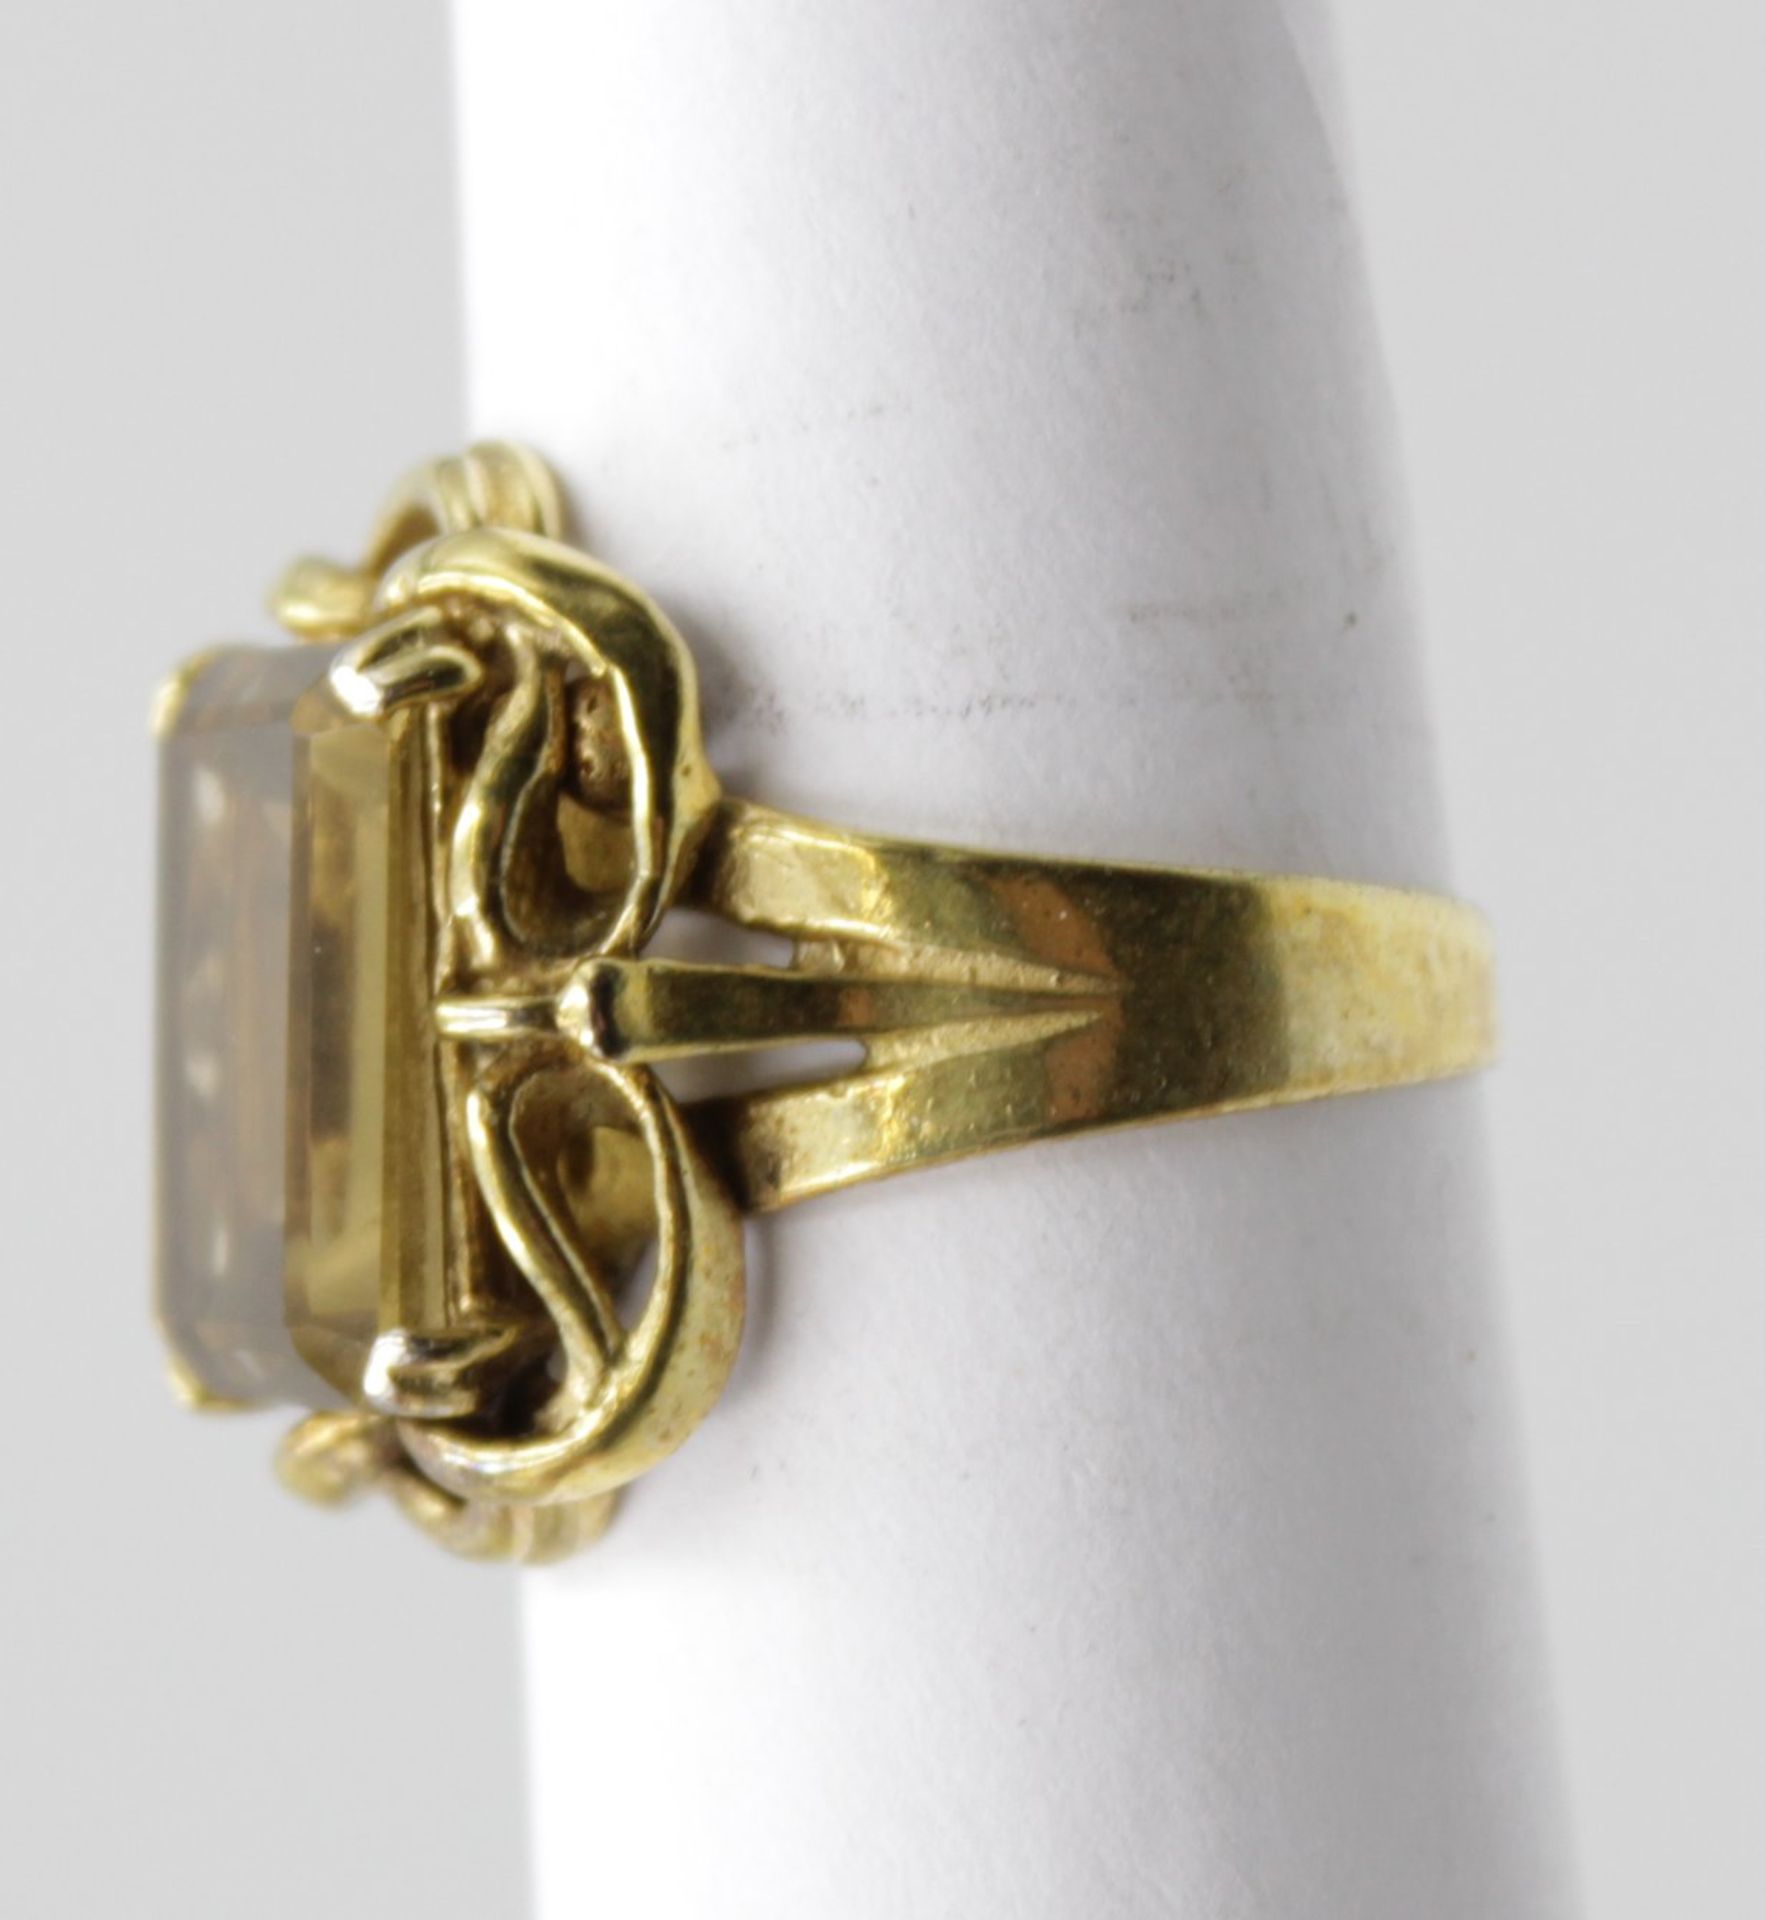 835er Silber-Ring vergoldet, facc. wohl Citrin, RG 55, ca. 6gr. - Bild 2 aus 4